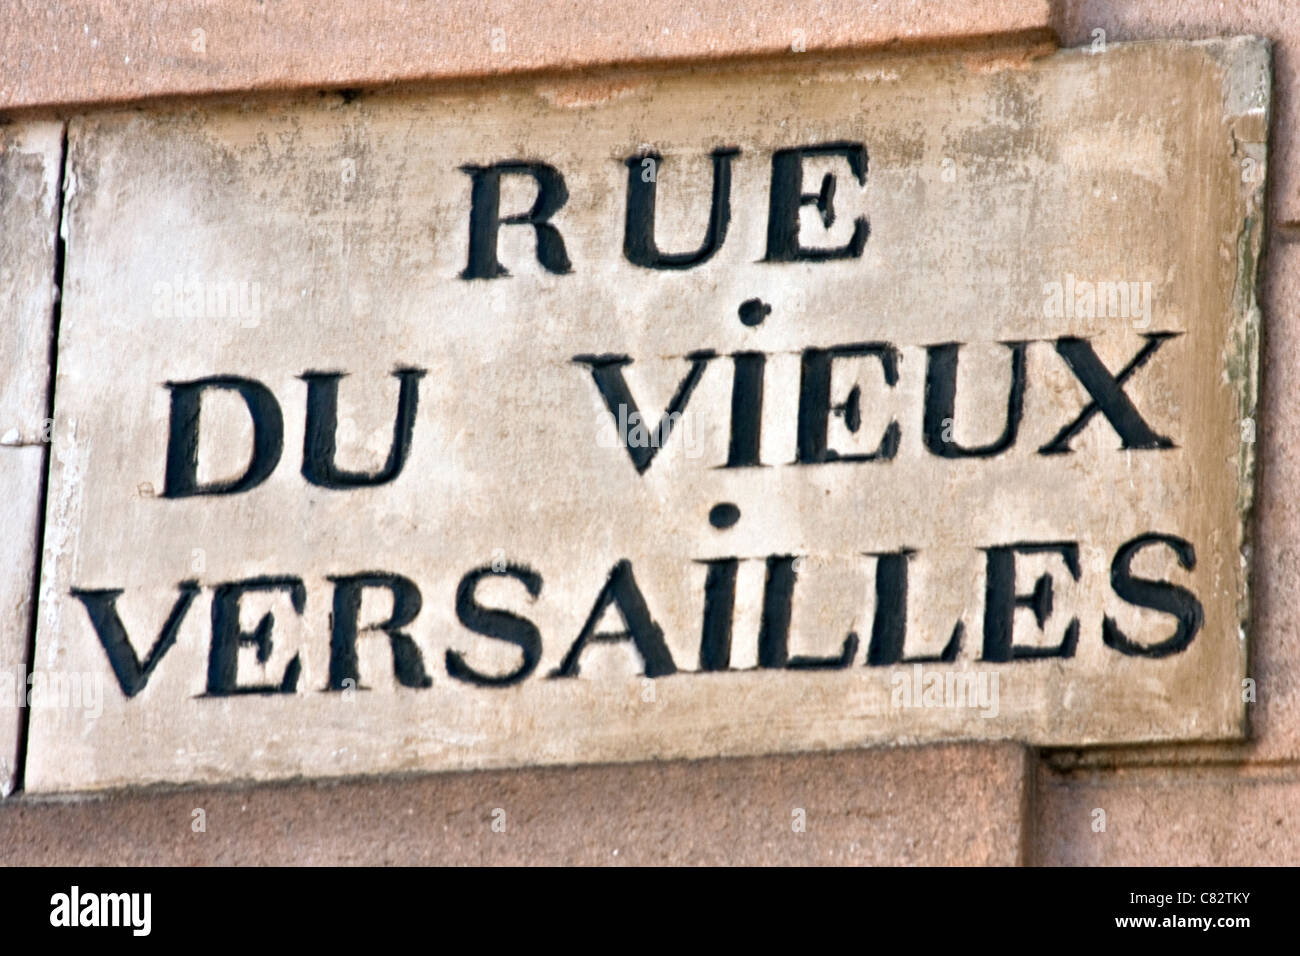 Signalisation routière - Rue du vieux Versailles, France Banque D'Images